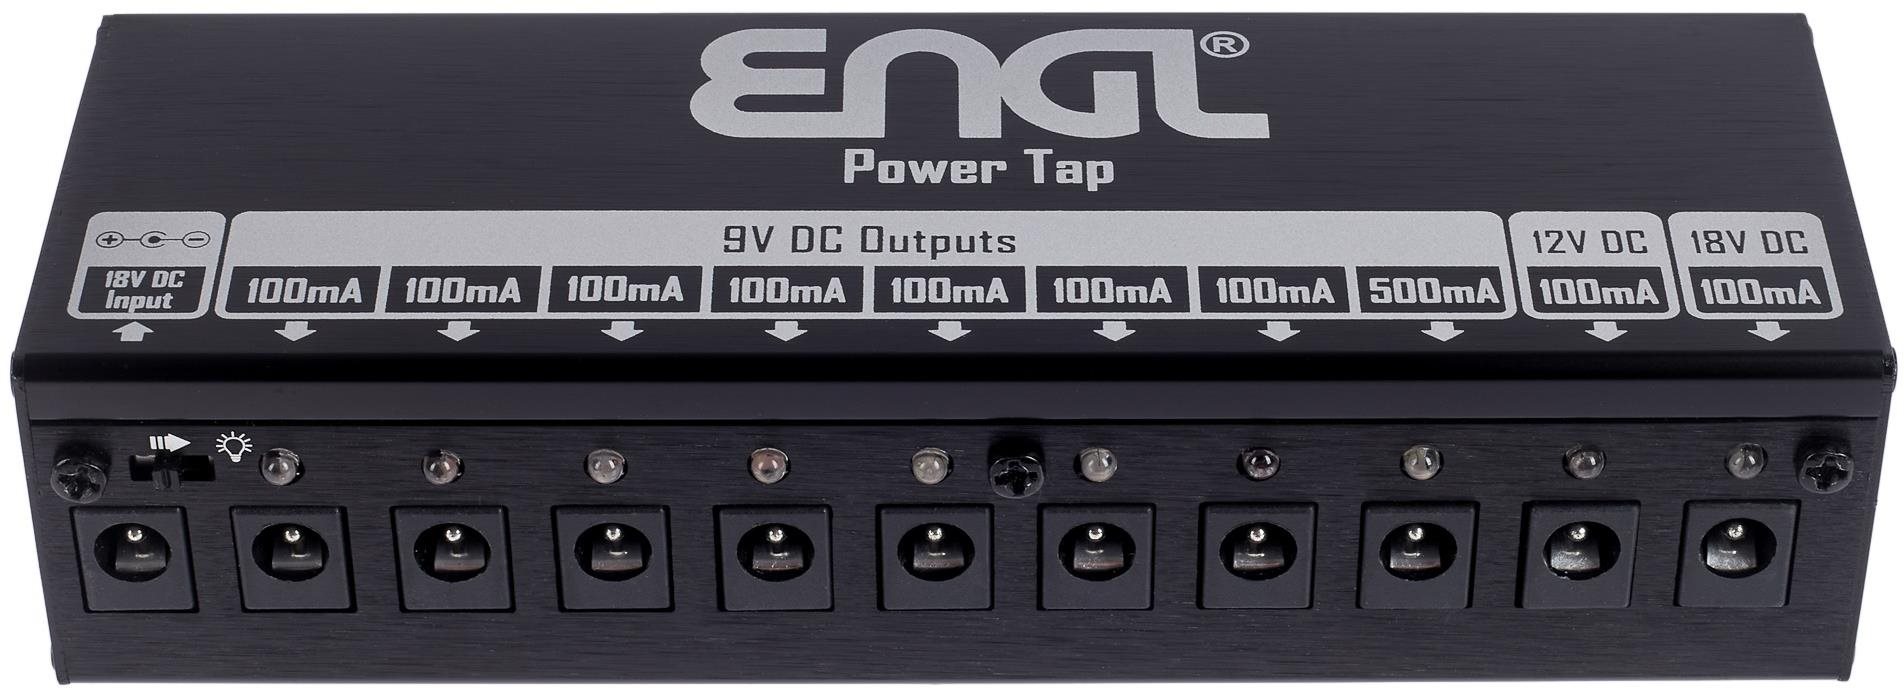 Hálózati tápegység ENGL Power Tap